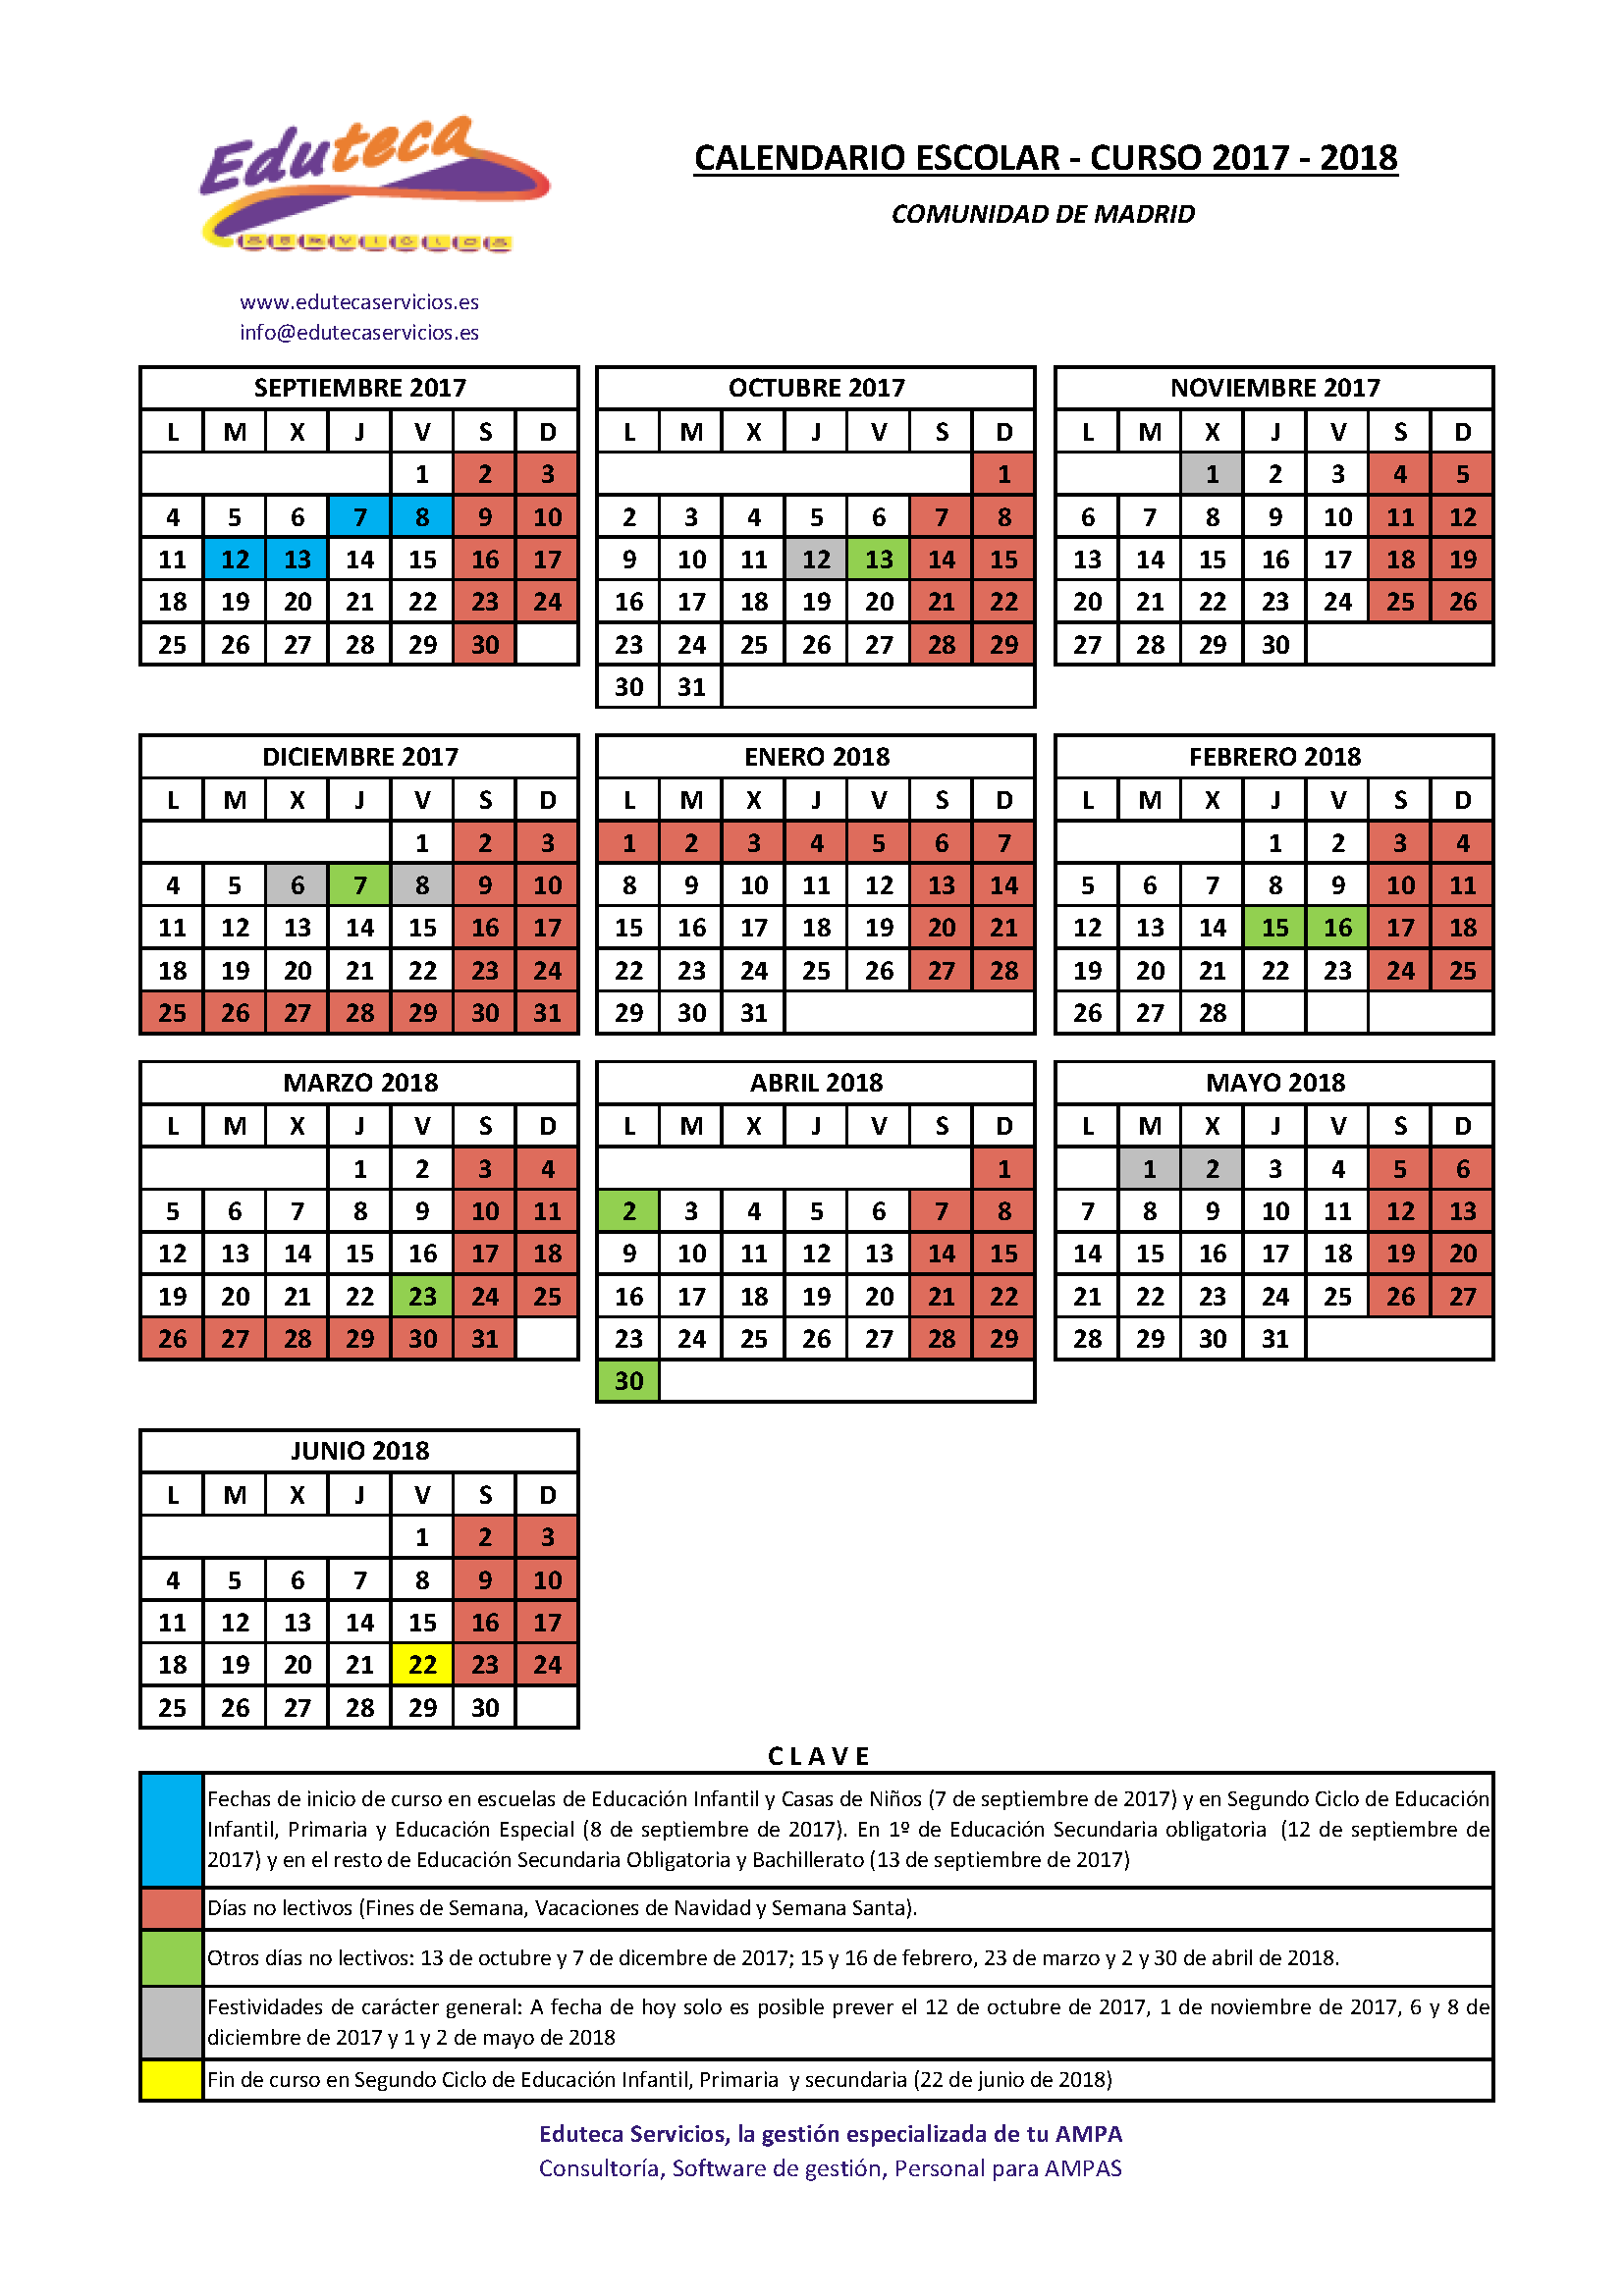 Calendario escolar 2017/2018